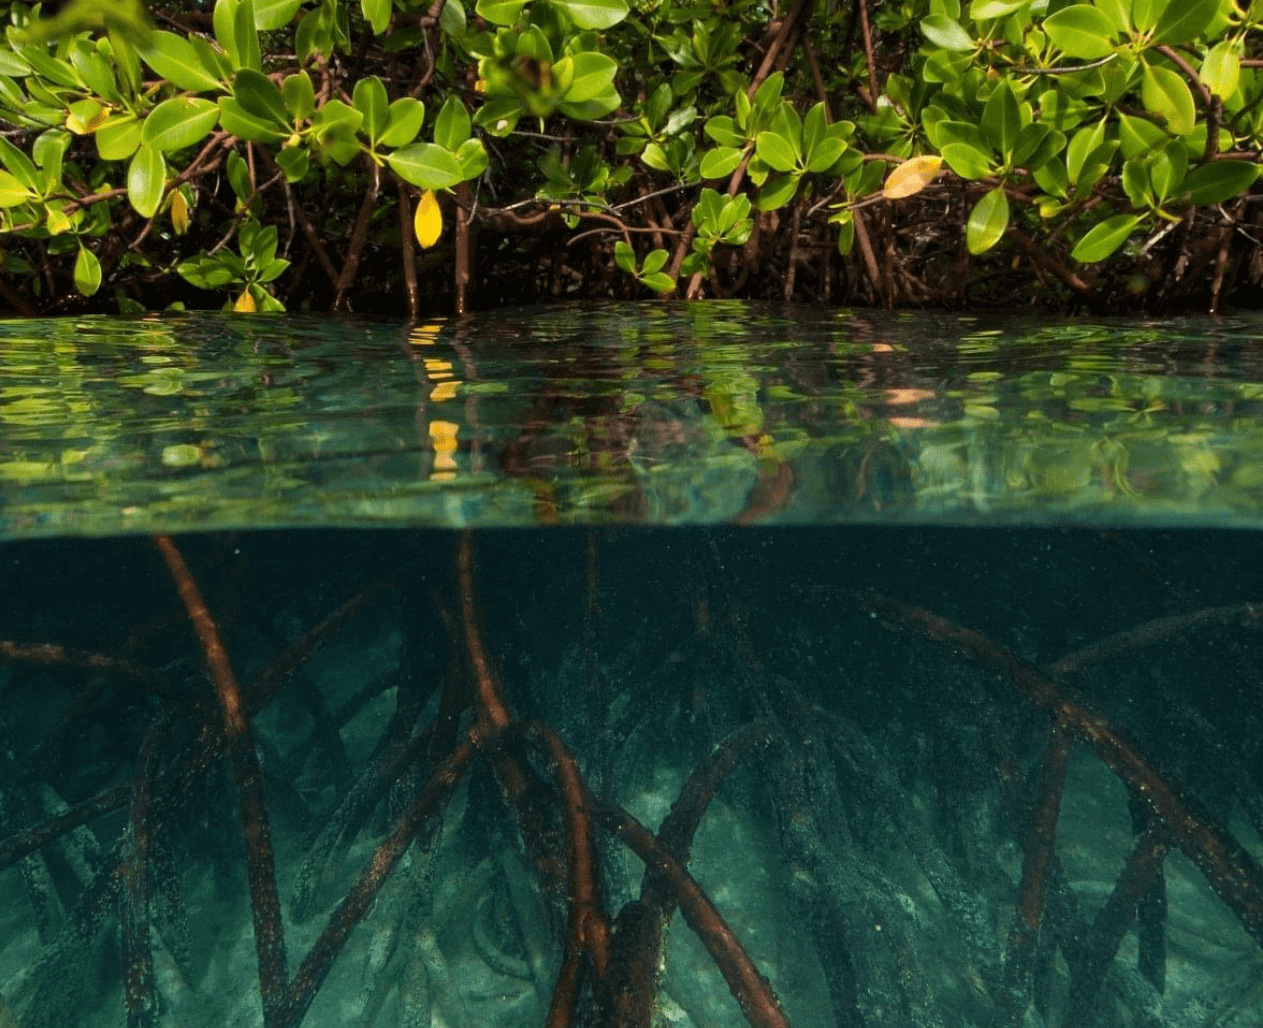 Creek image with underwater mangroves